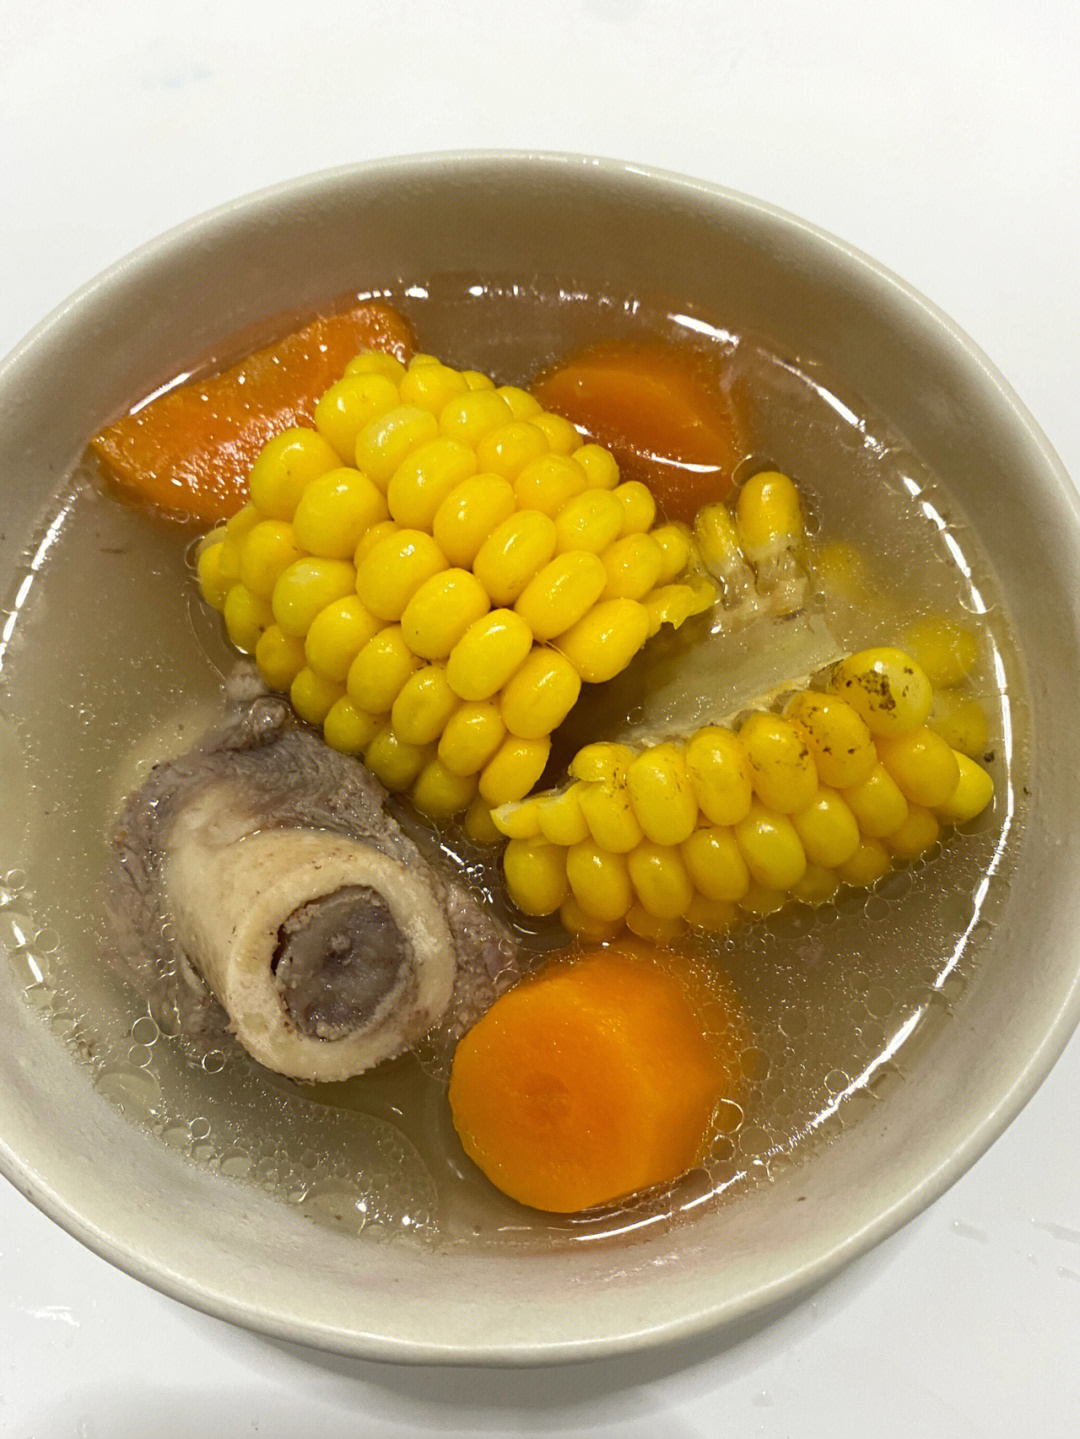 懒人版电饭锅煲汤清甜滋润的玉米排骨汤